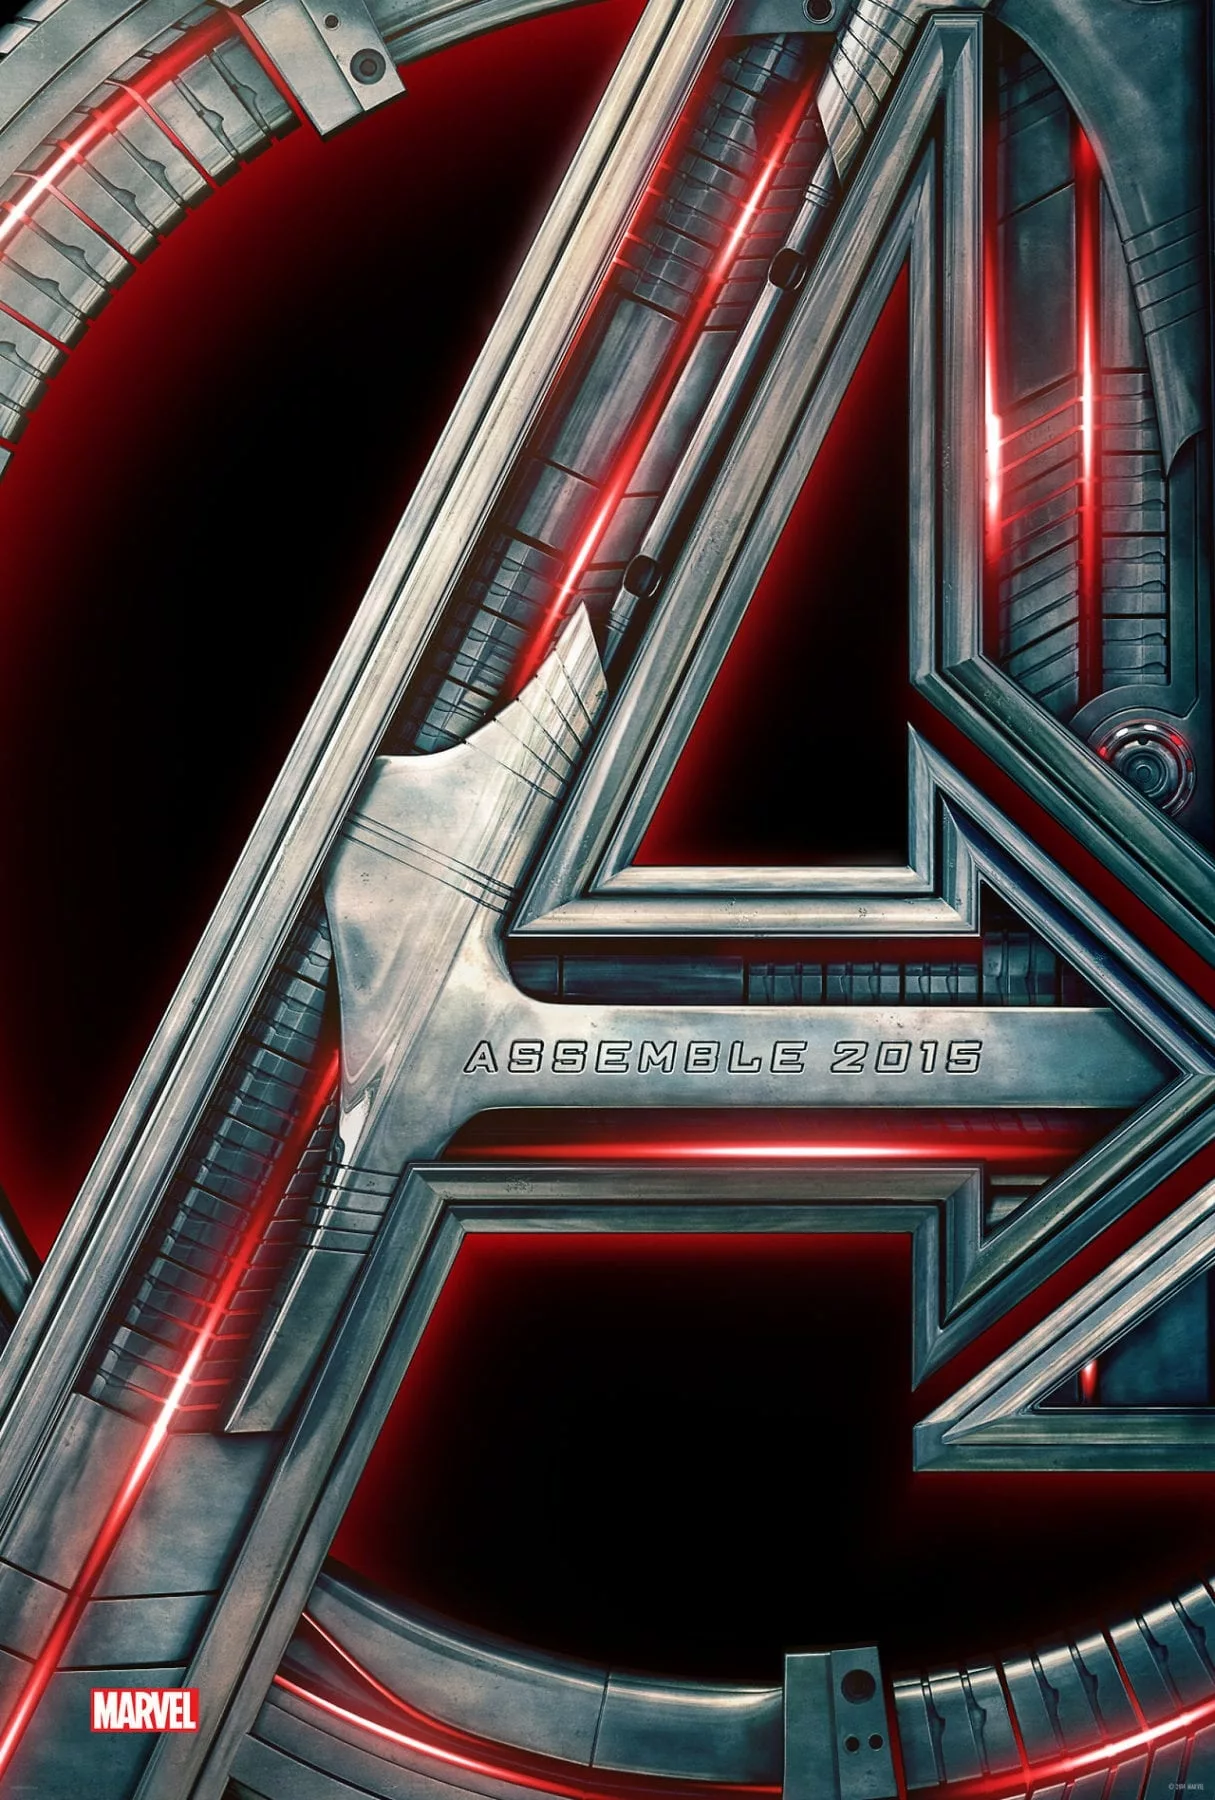 Marvel Releases Avengers Endgame Teaser Poster 5209